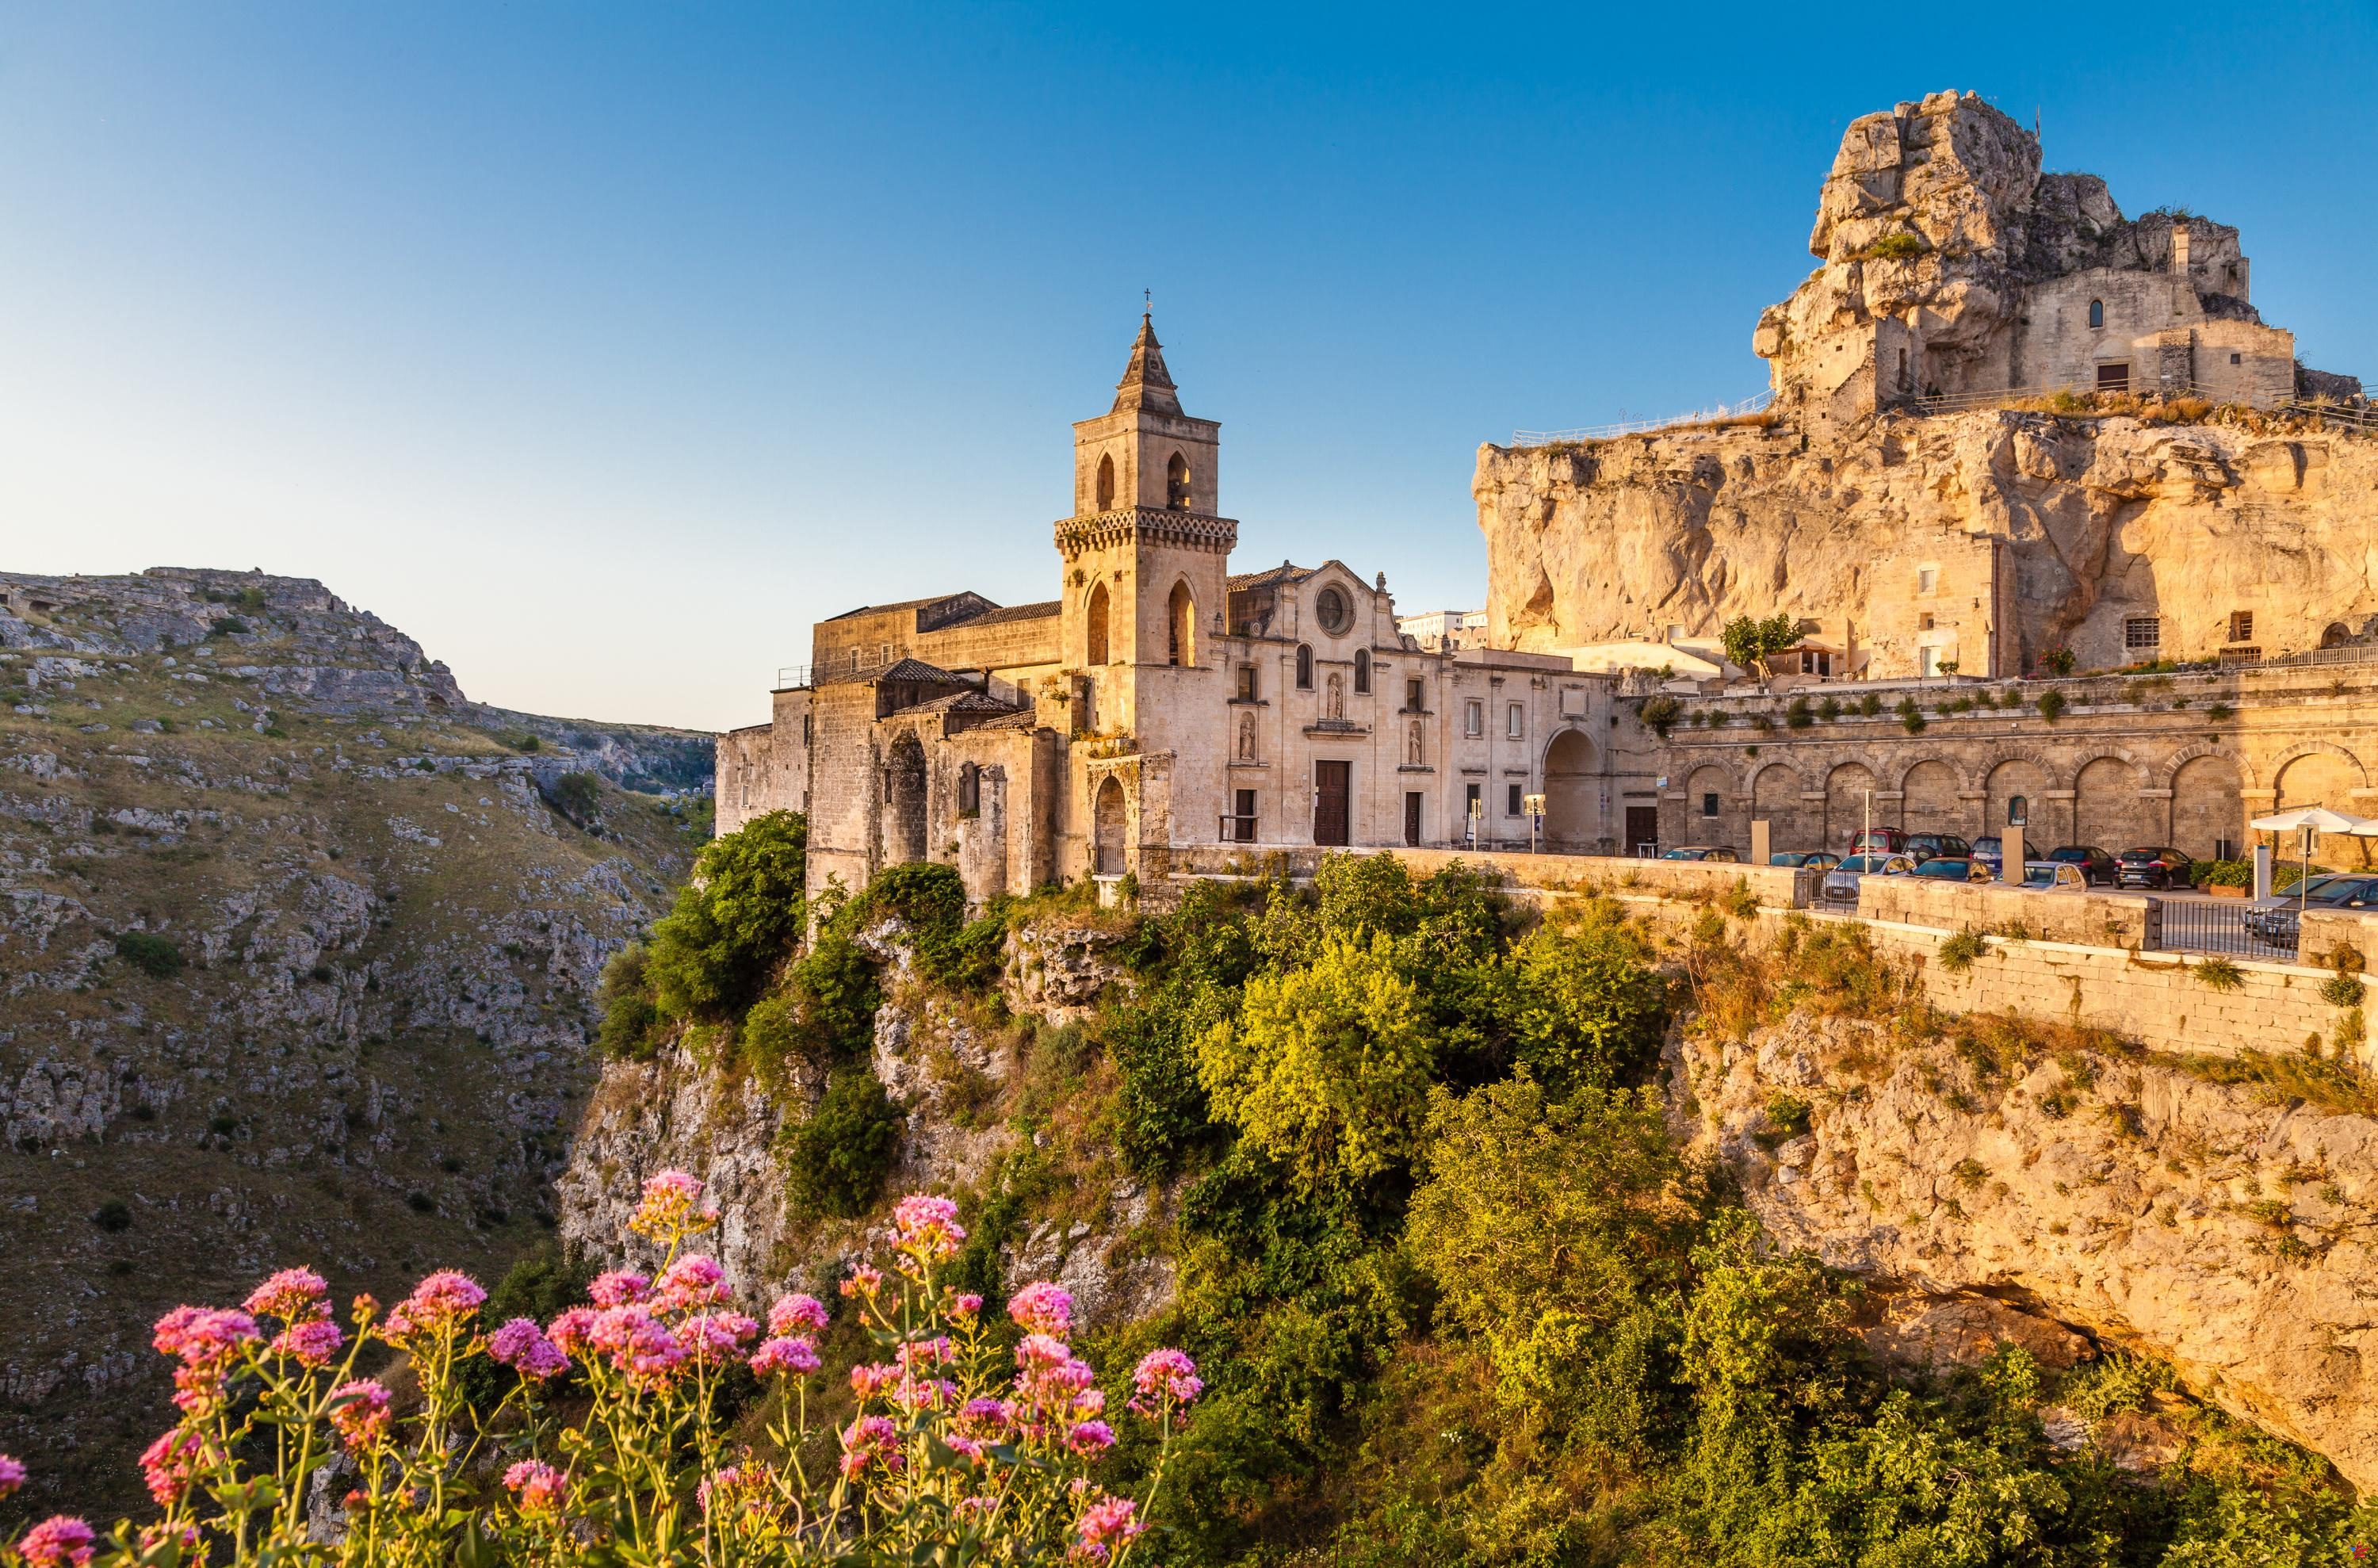 Visita Puglia en 10 días: nuestros consejos e itinerario día a día